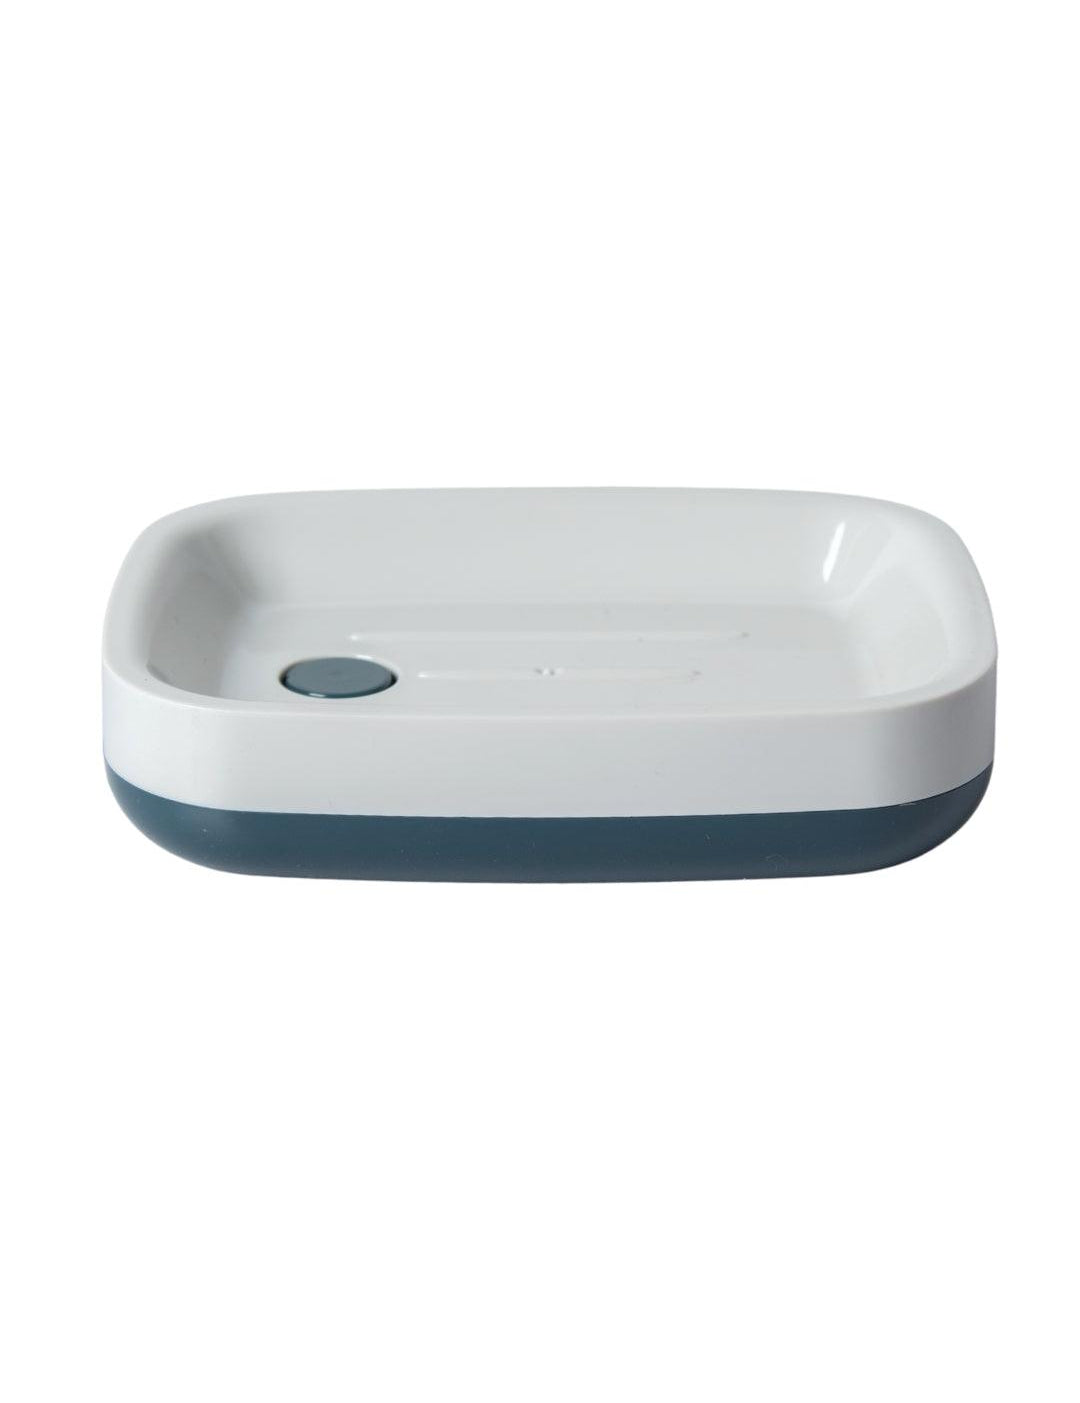 Modern Self Draining Soap Dish Holder - White